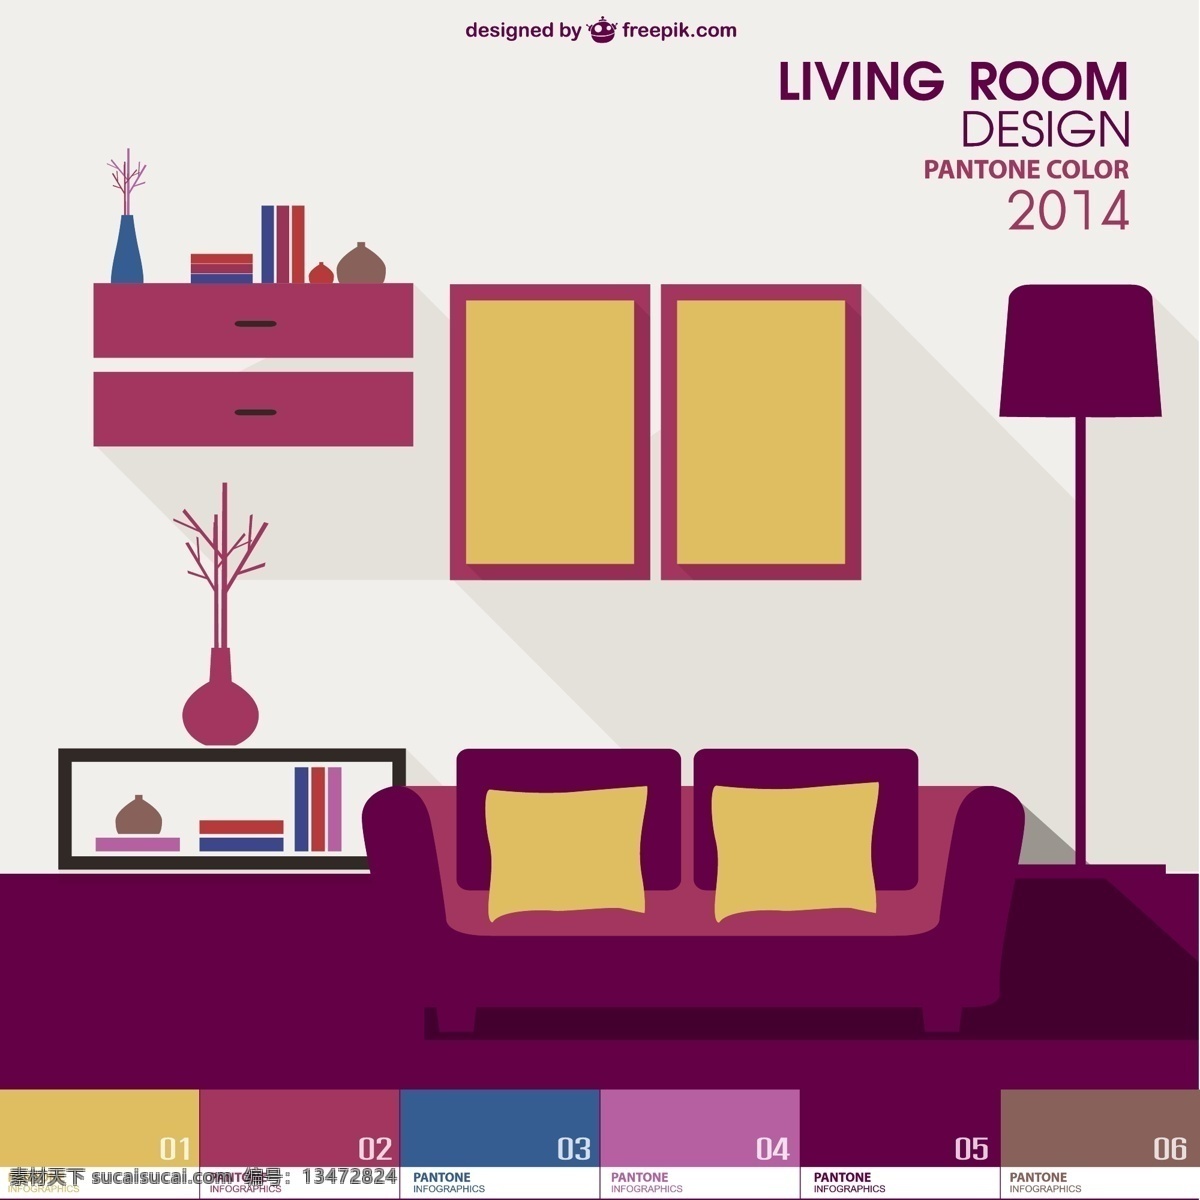 客厅 pantone 图表 模板 弹簧 色彩 图形 墙 布局 建筑 平面设计 室内设计 颜色 紫色 装饰 数据 信息 内部 白色